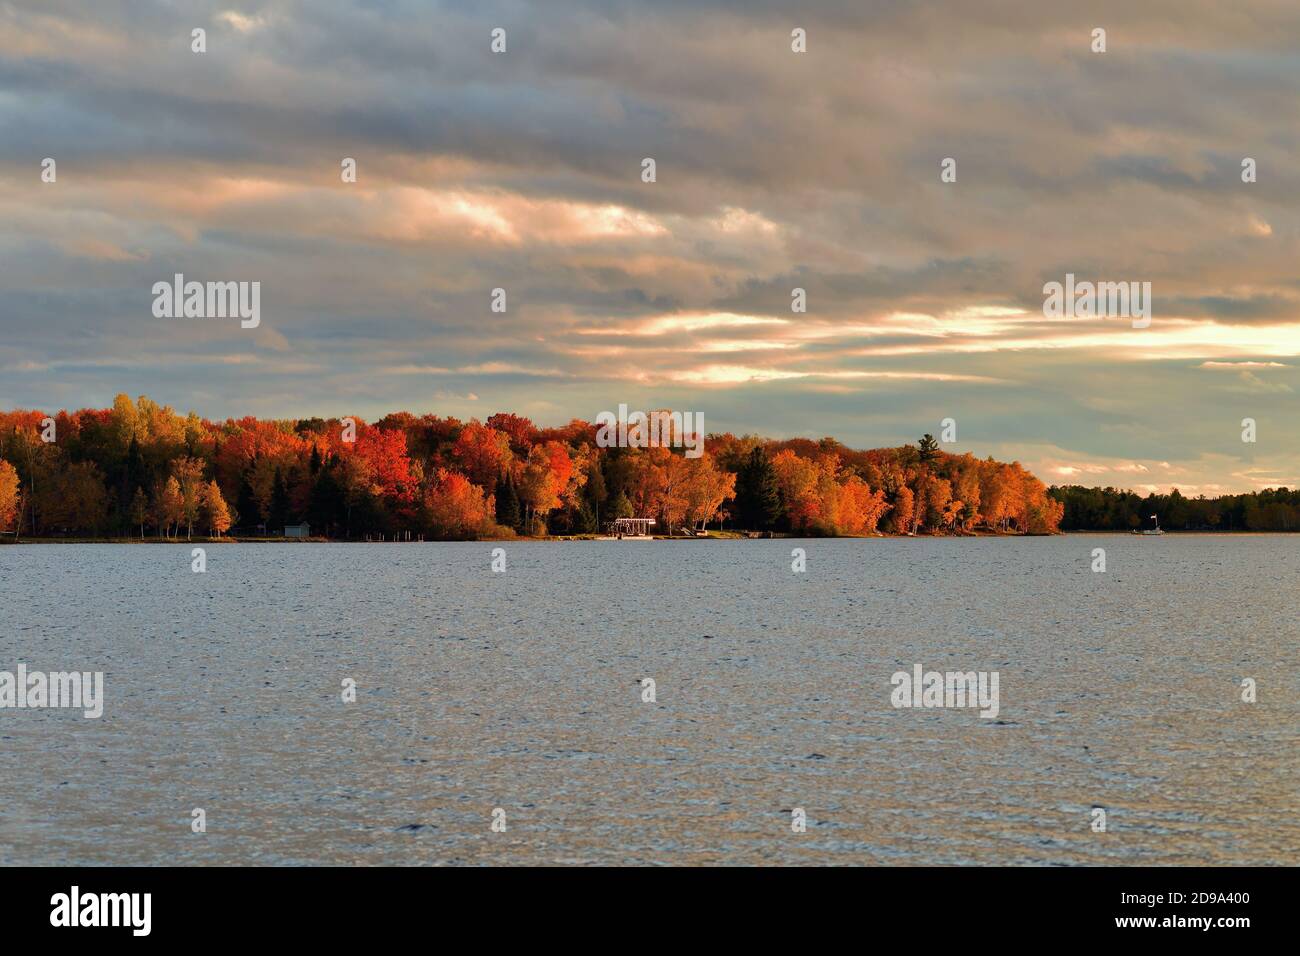 Trout Lake, Michigan, Stati Uniti. L'autunno e il sole nel tardo pomeriggio scenderanno su un tratto di costa lungo il lago Trout nella penisola superiore del Michigan. Foto Stock